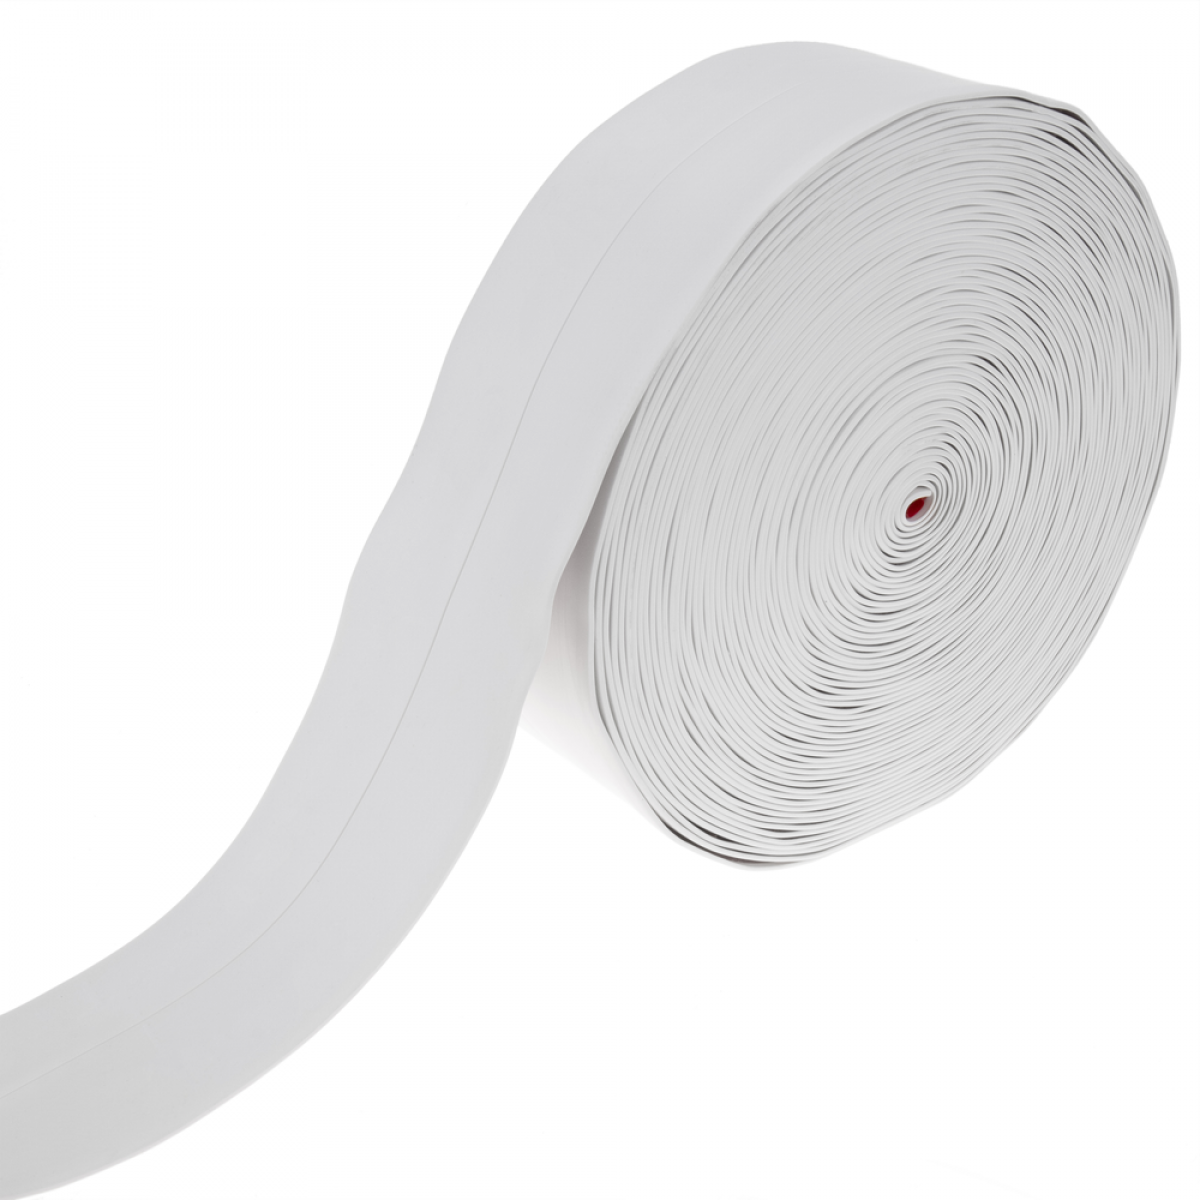 Primematik - Plinthe flexible autocollante 19 x 19 mm. Longueur 20 m blanc - Plinthe carrelage